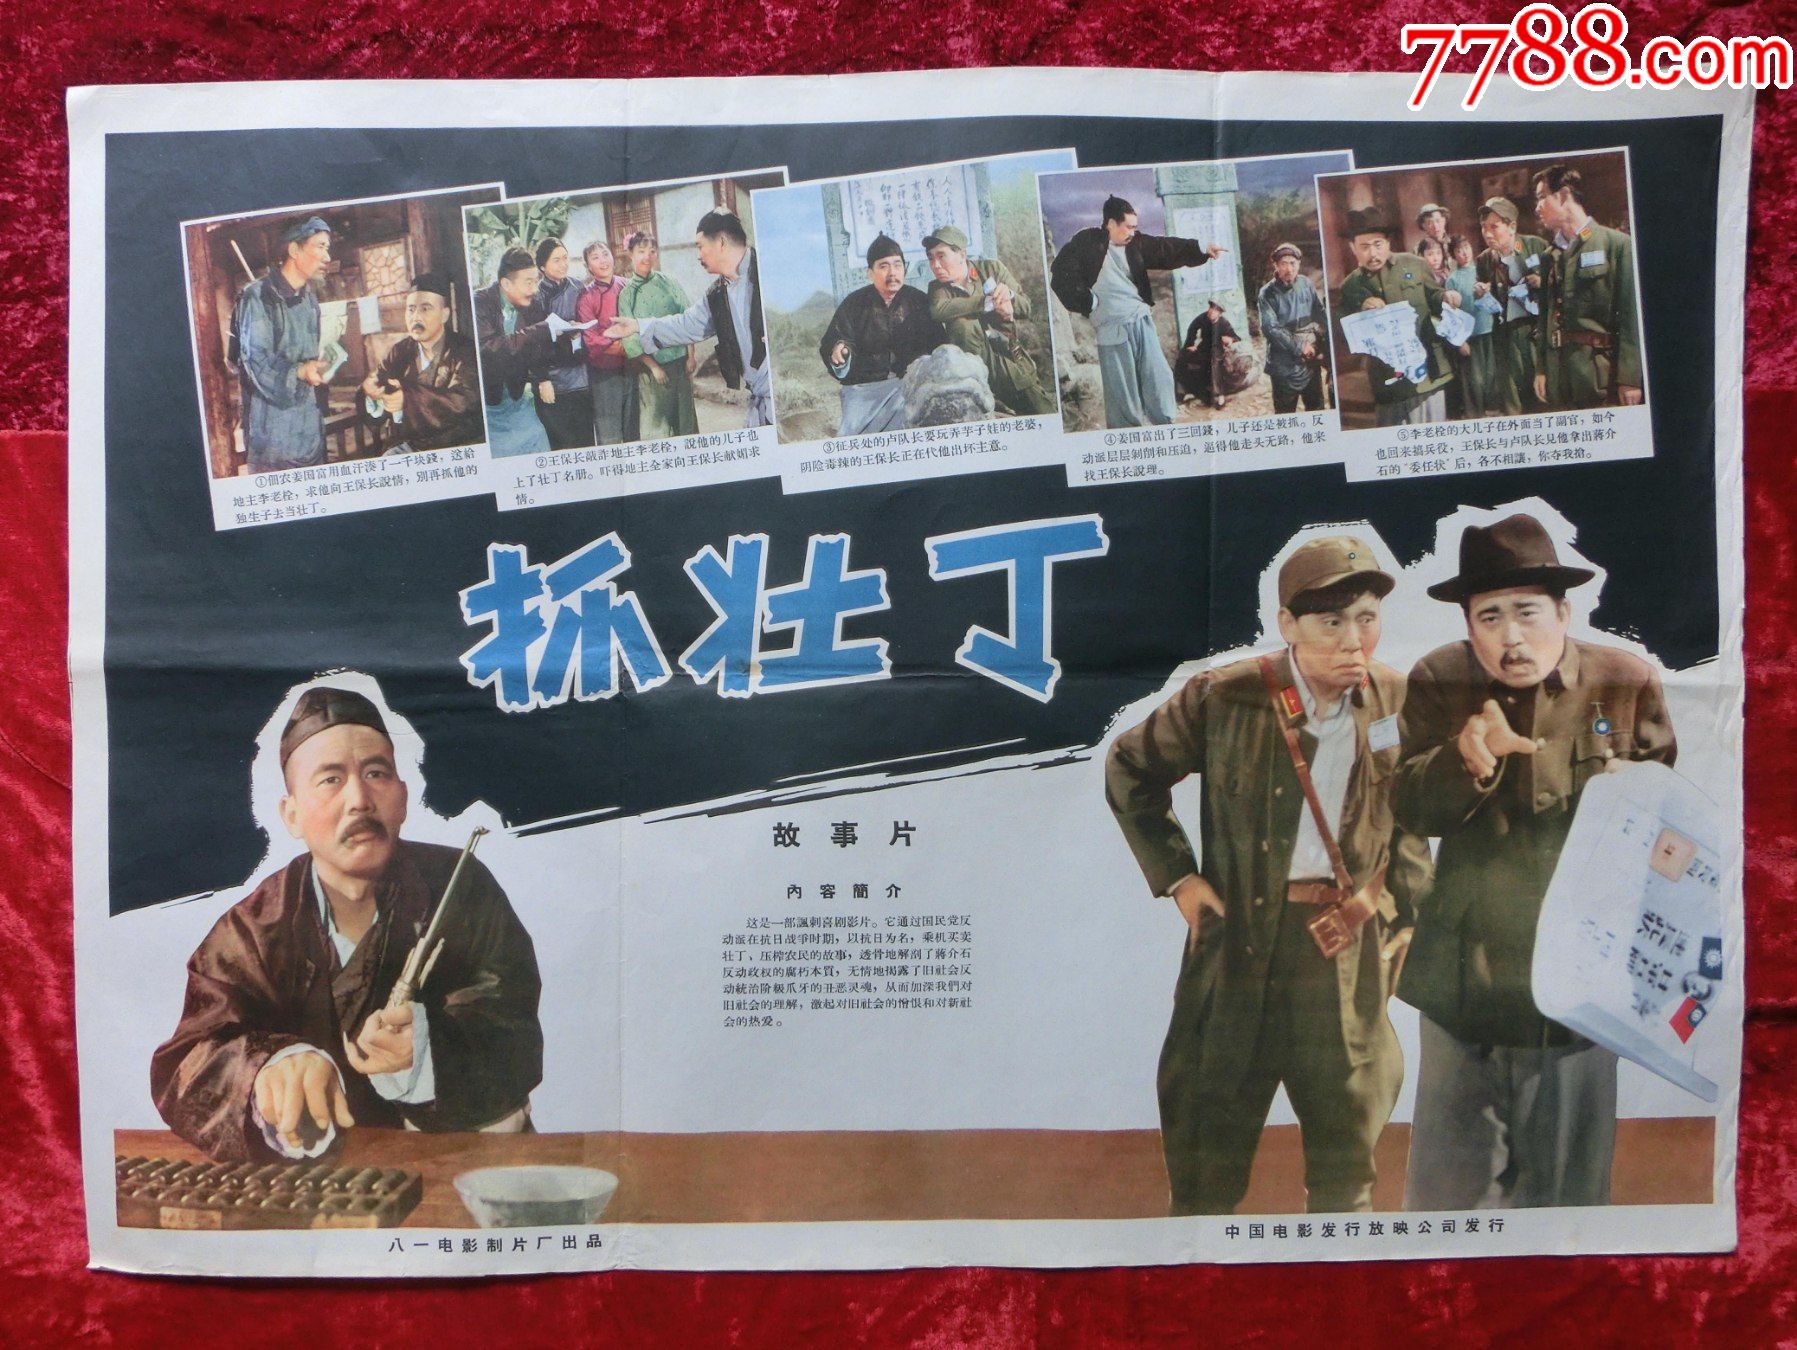 2开电影海报:抓壮丁(1963年上映)(抗日专题)导演:沈剡,陈戈